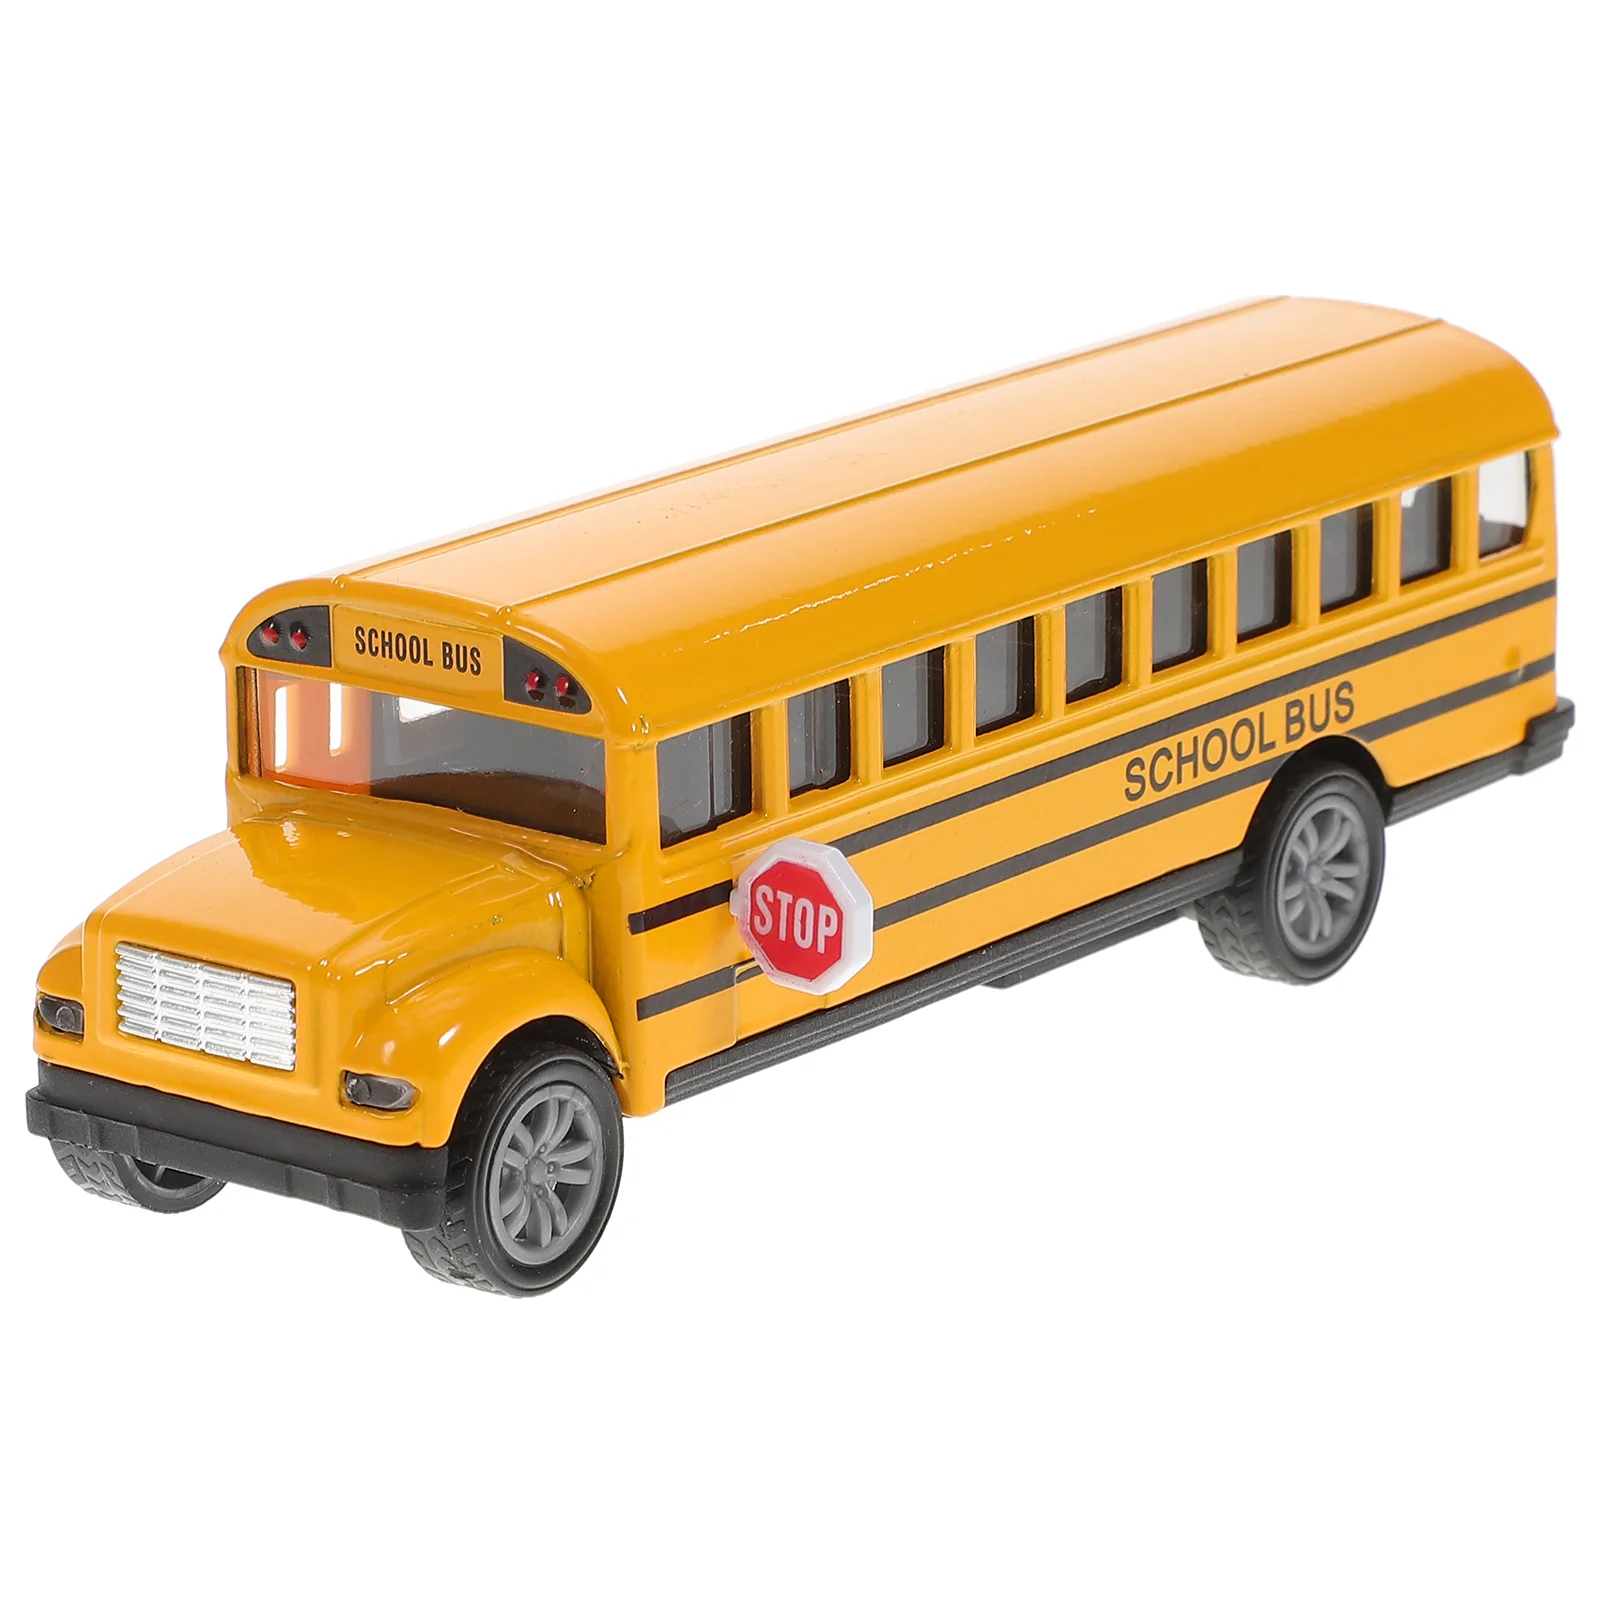 

Школьный автобус игрушечный автомобиль задняя часть желтая школьный автобус игрушки модель настольное украшение подарок вечерние сувениры лучший подарок на день рождения для мальчиков: 32